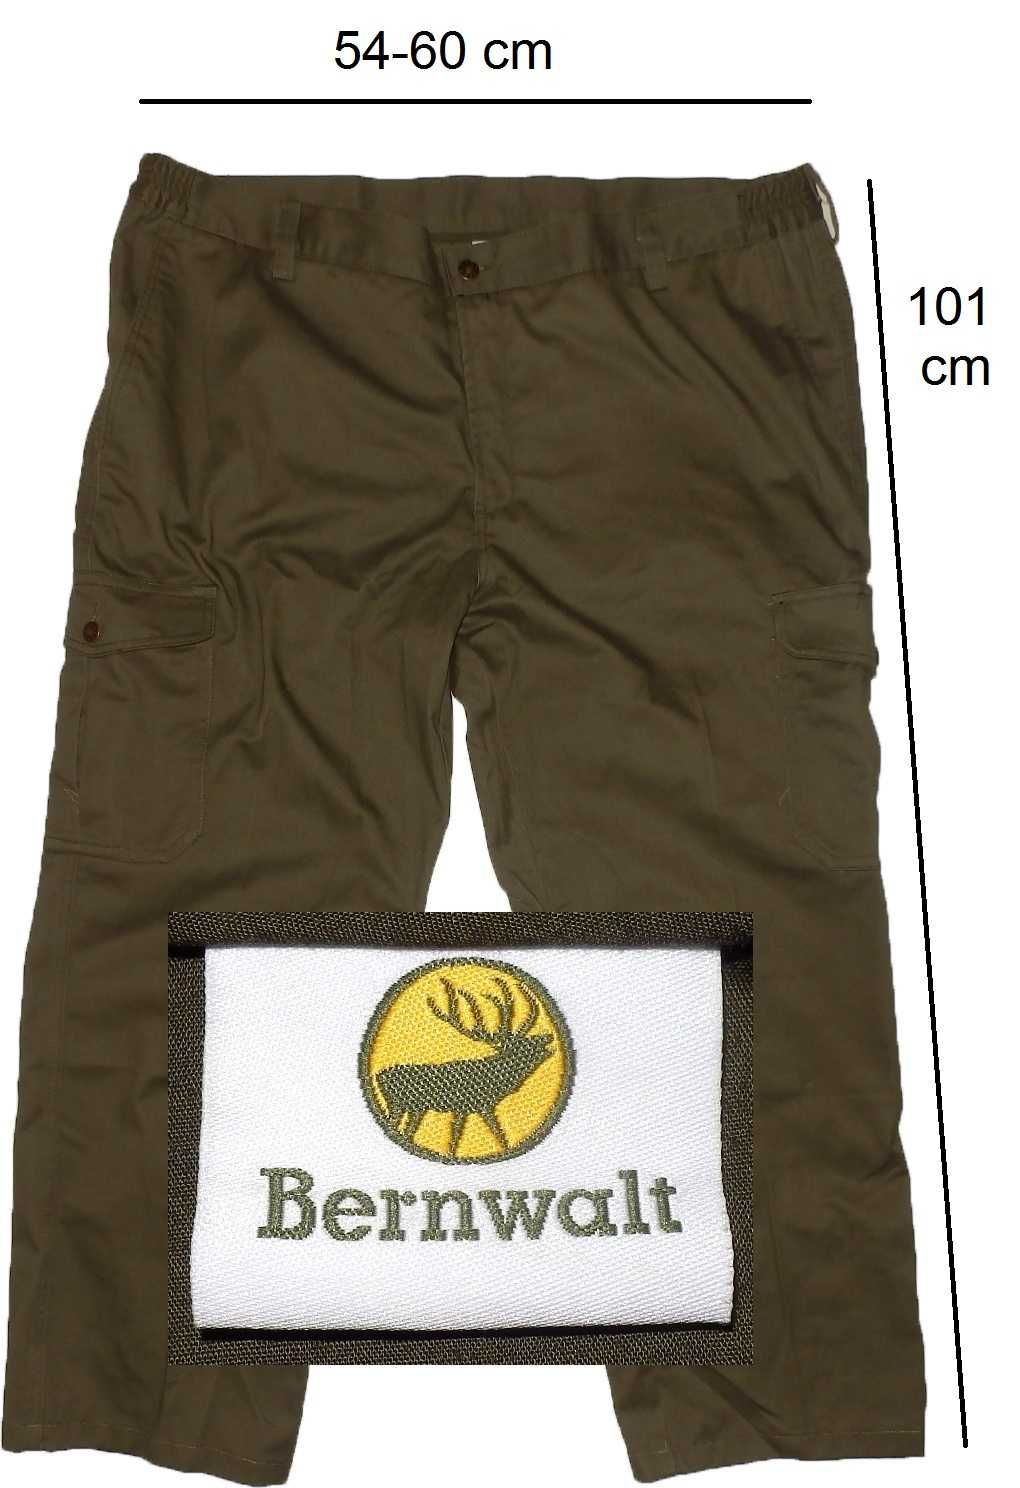 Pantaloni pescuit vanatoare BERNWALT Austria (men XXL) cod-218365